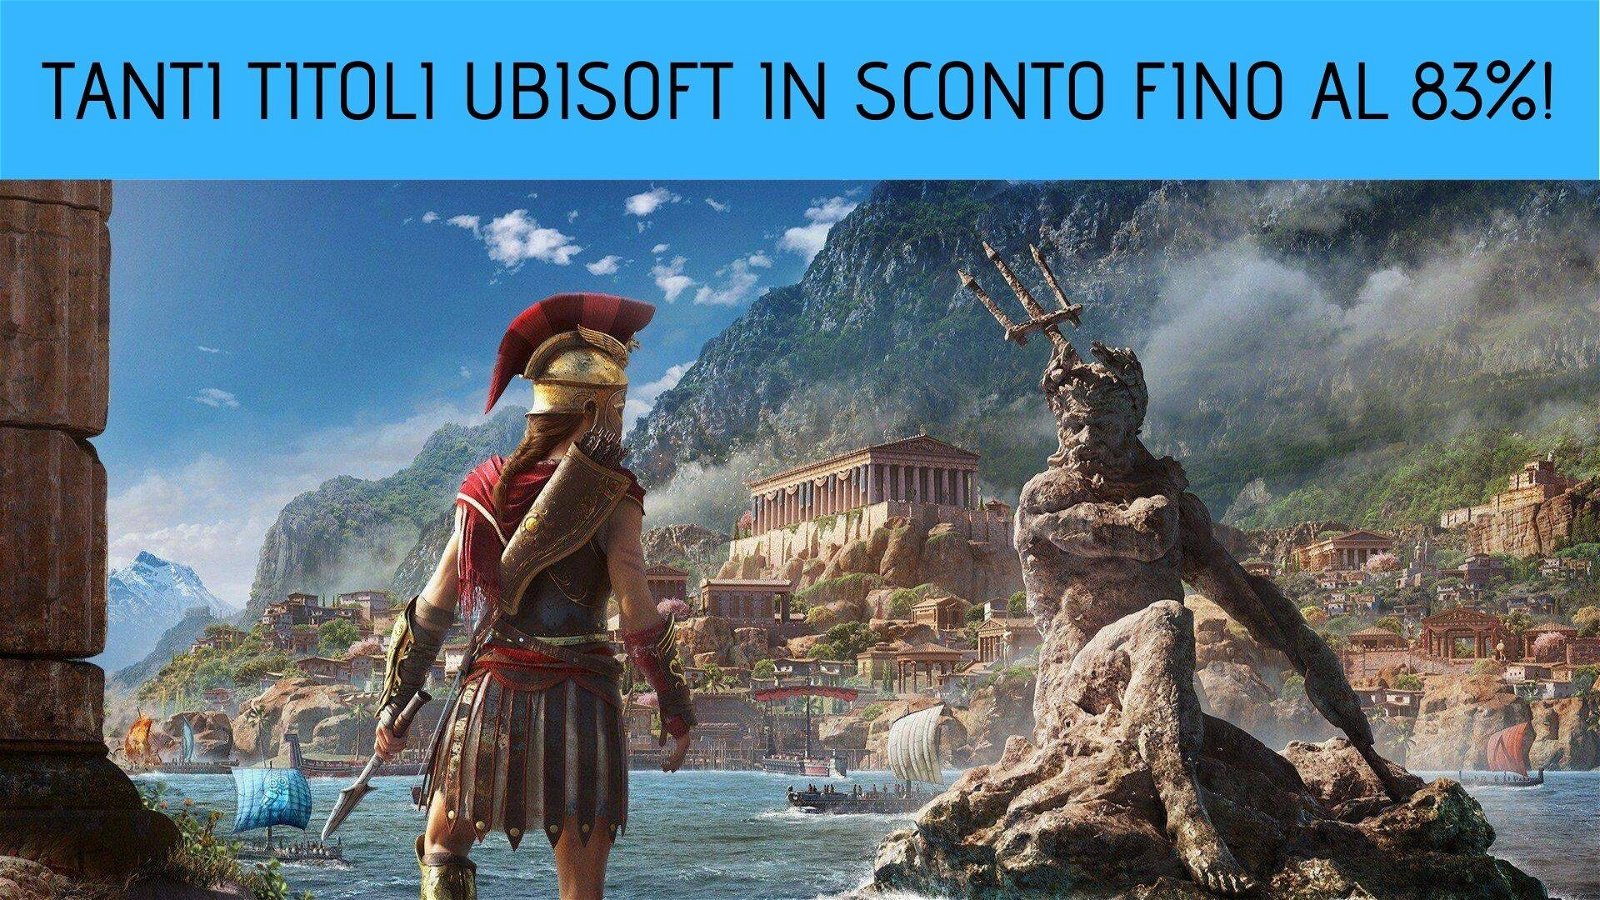 Immagine di Assassin's Creed Odyssey e altri titoli Ubisoft in sconto fino all’83% su GamersGate!